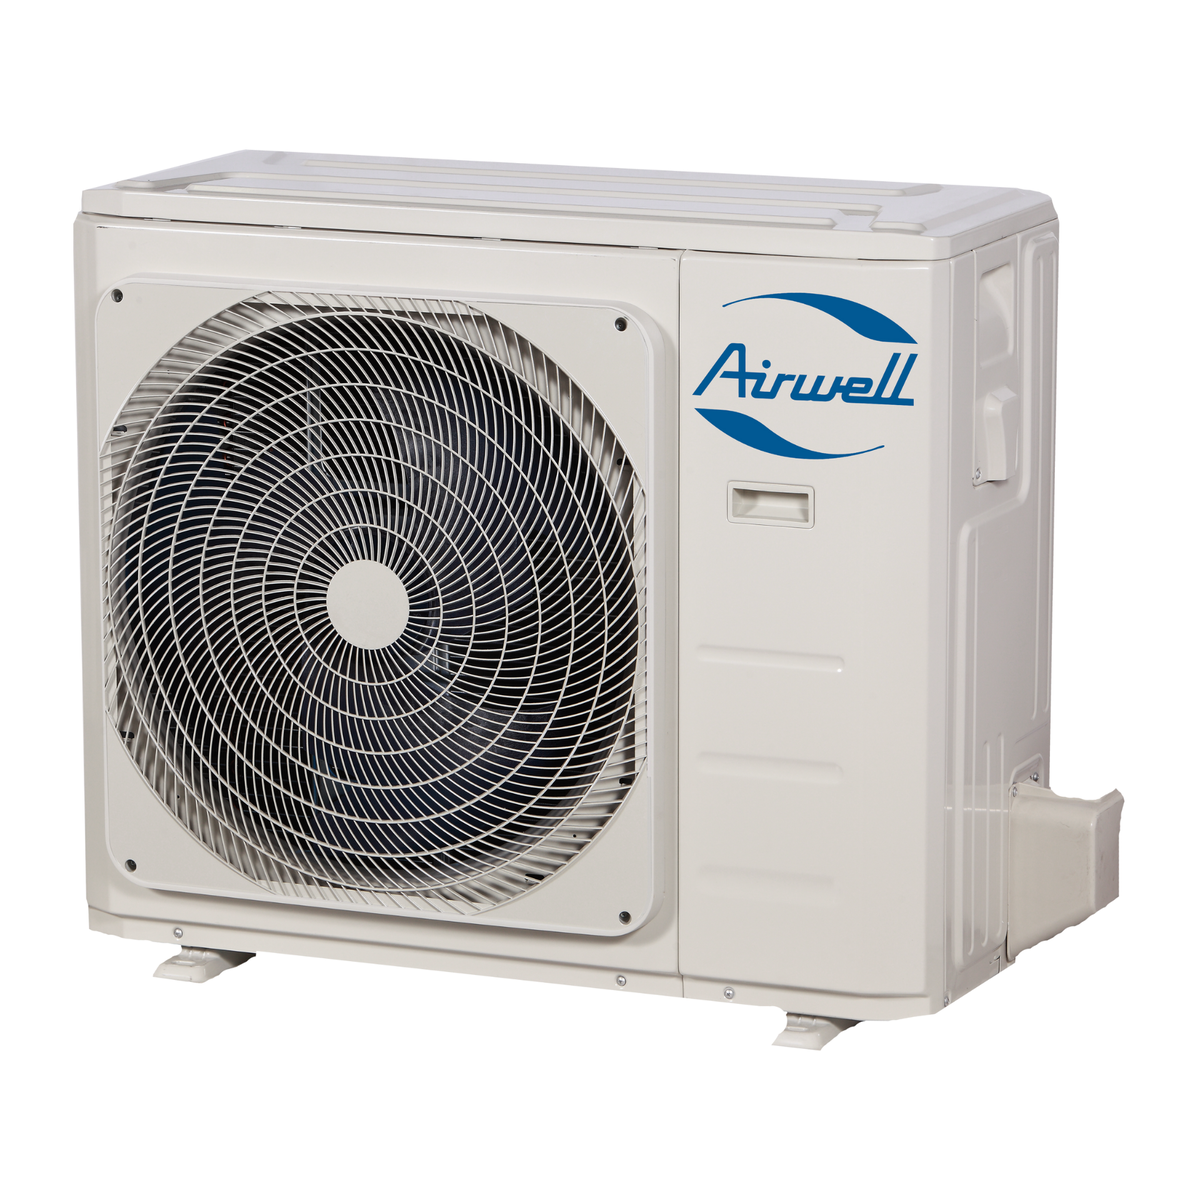 Oro kondicionierius/šilumos siurblys Airwell HARMONIA, efektyvus šildymas iki -15°C, šaldymas 3,51 kW, šildymas 3,81 kW